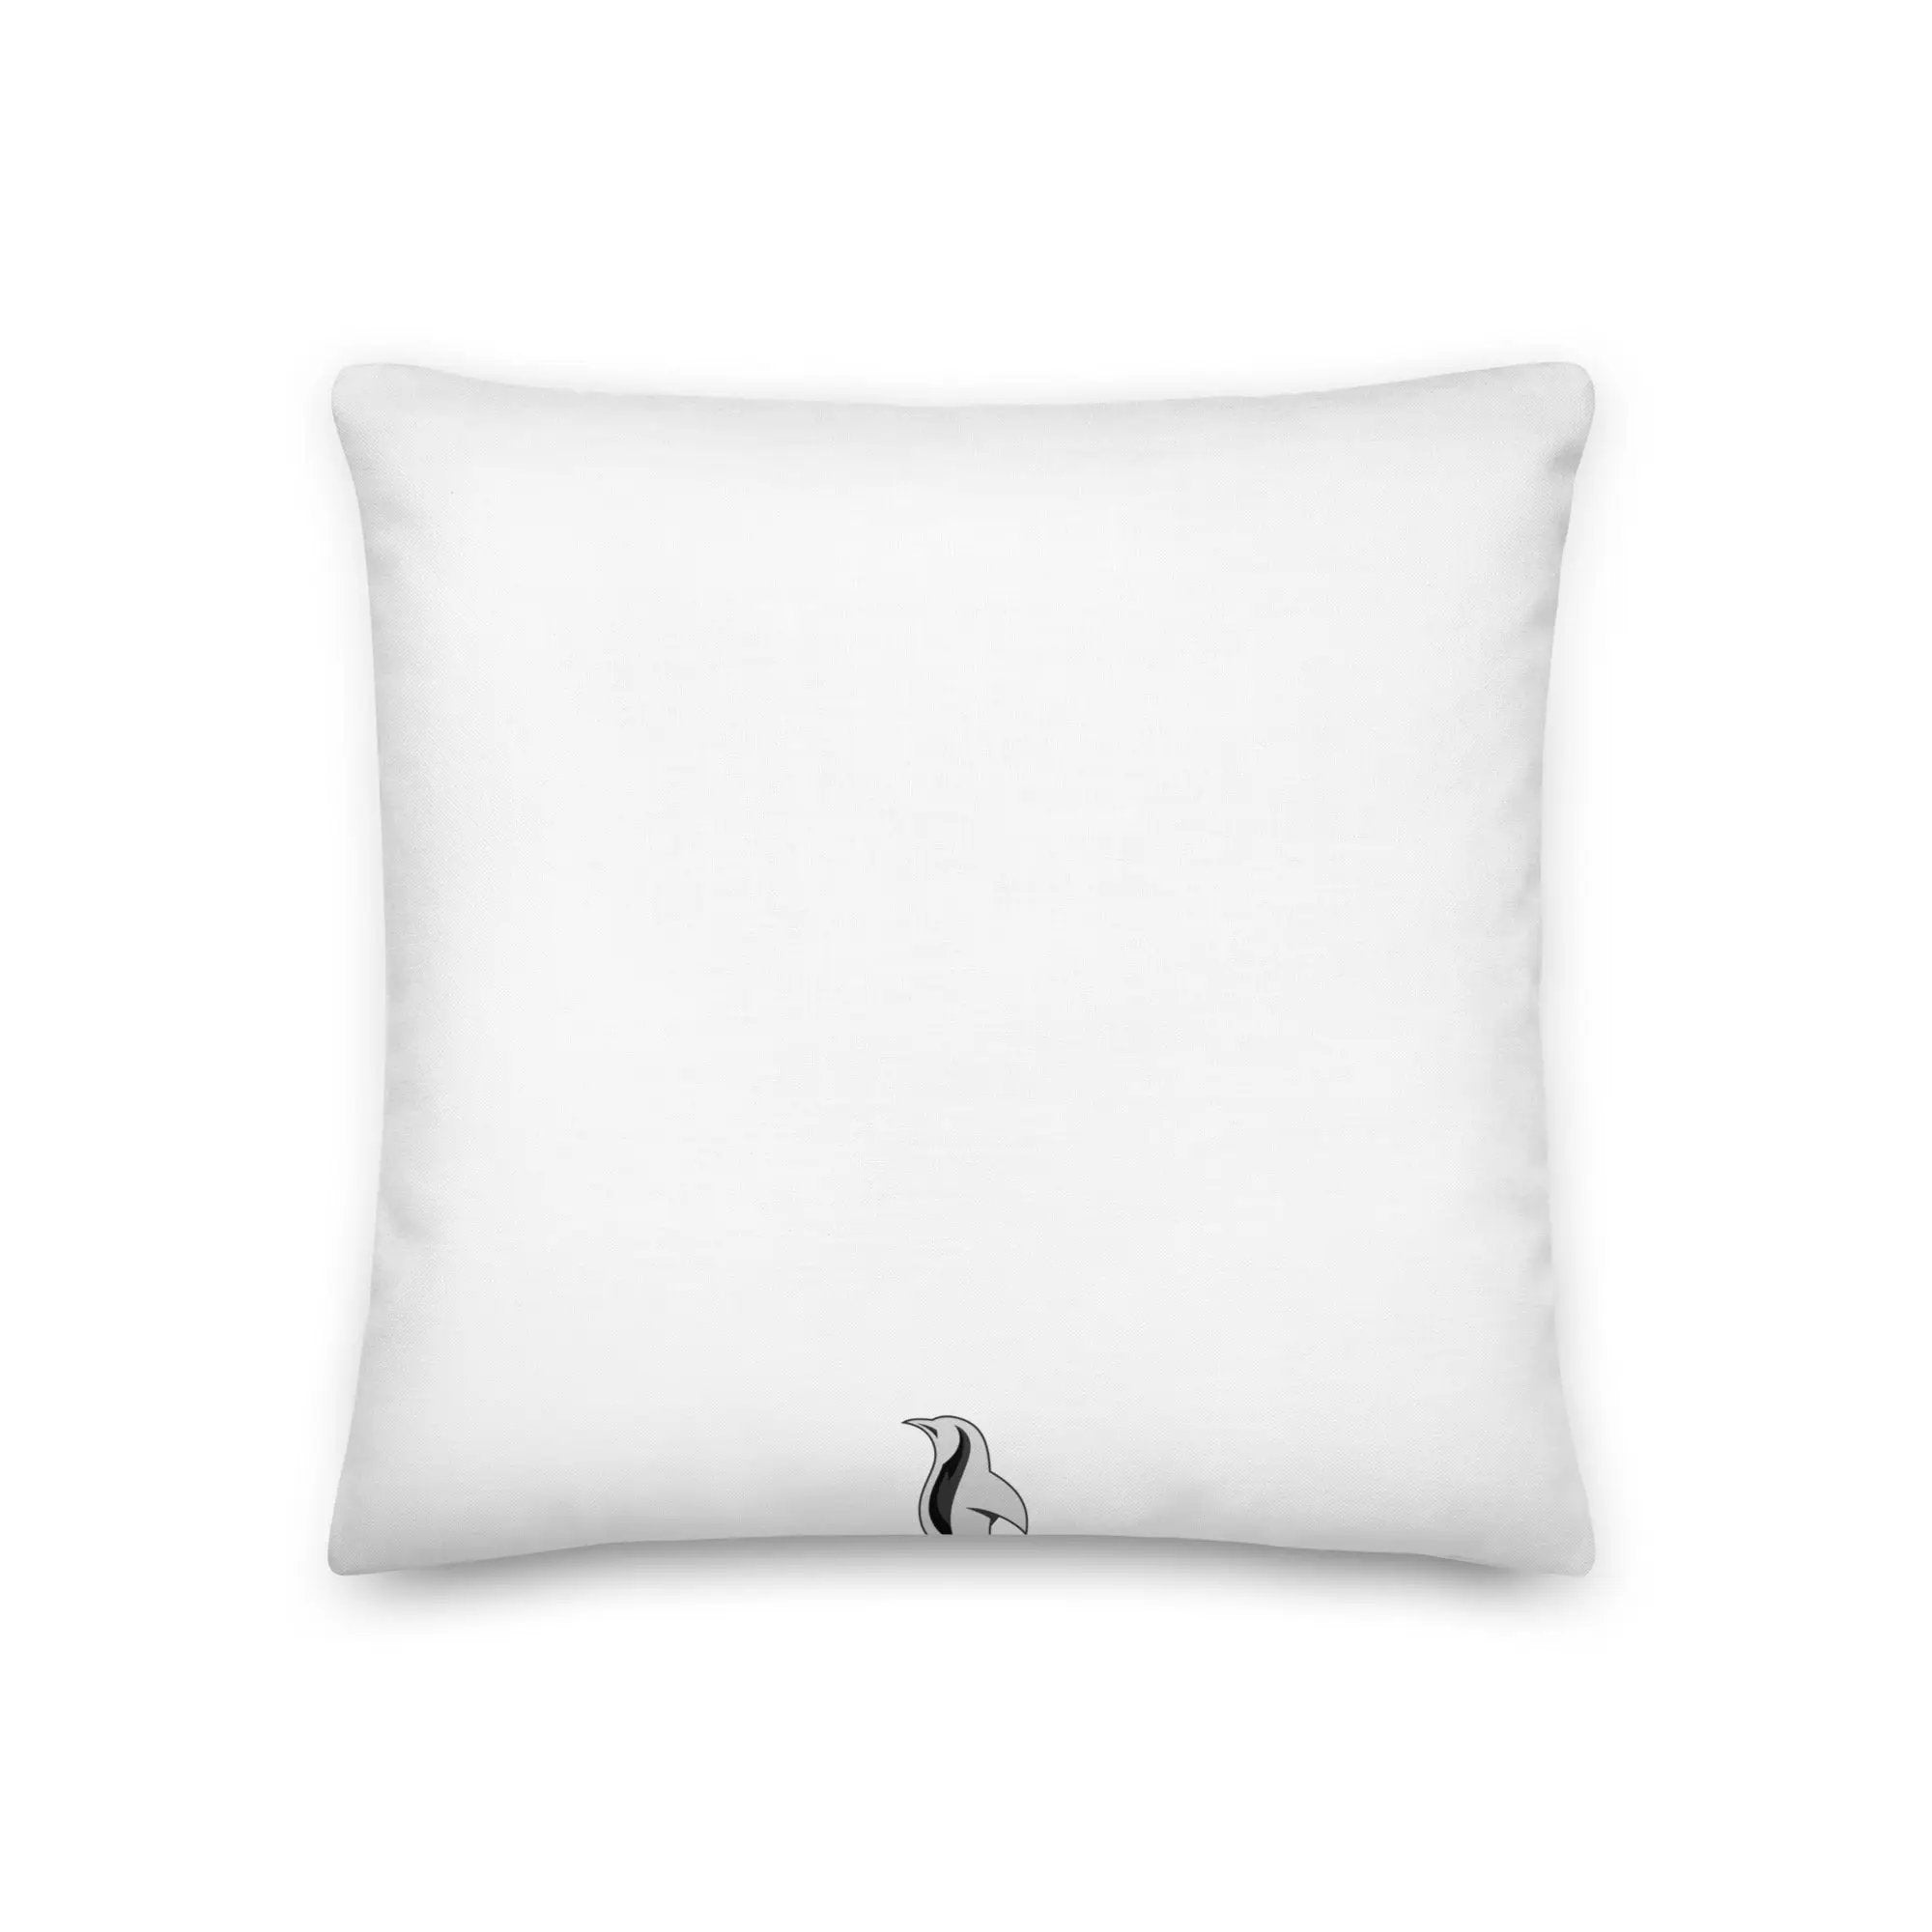 Cringer Premium Pillow